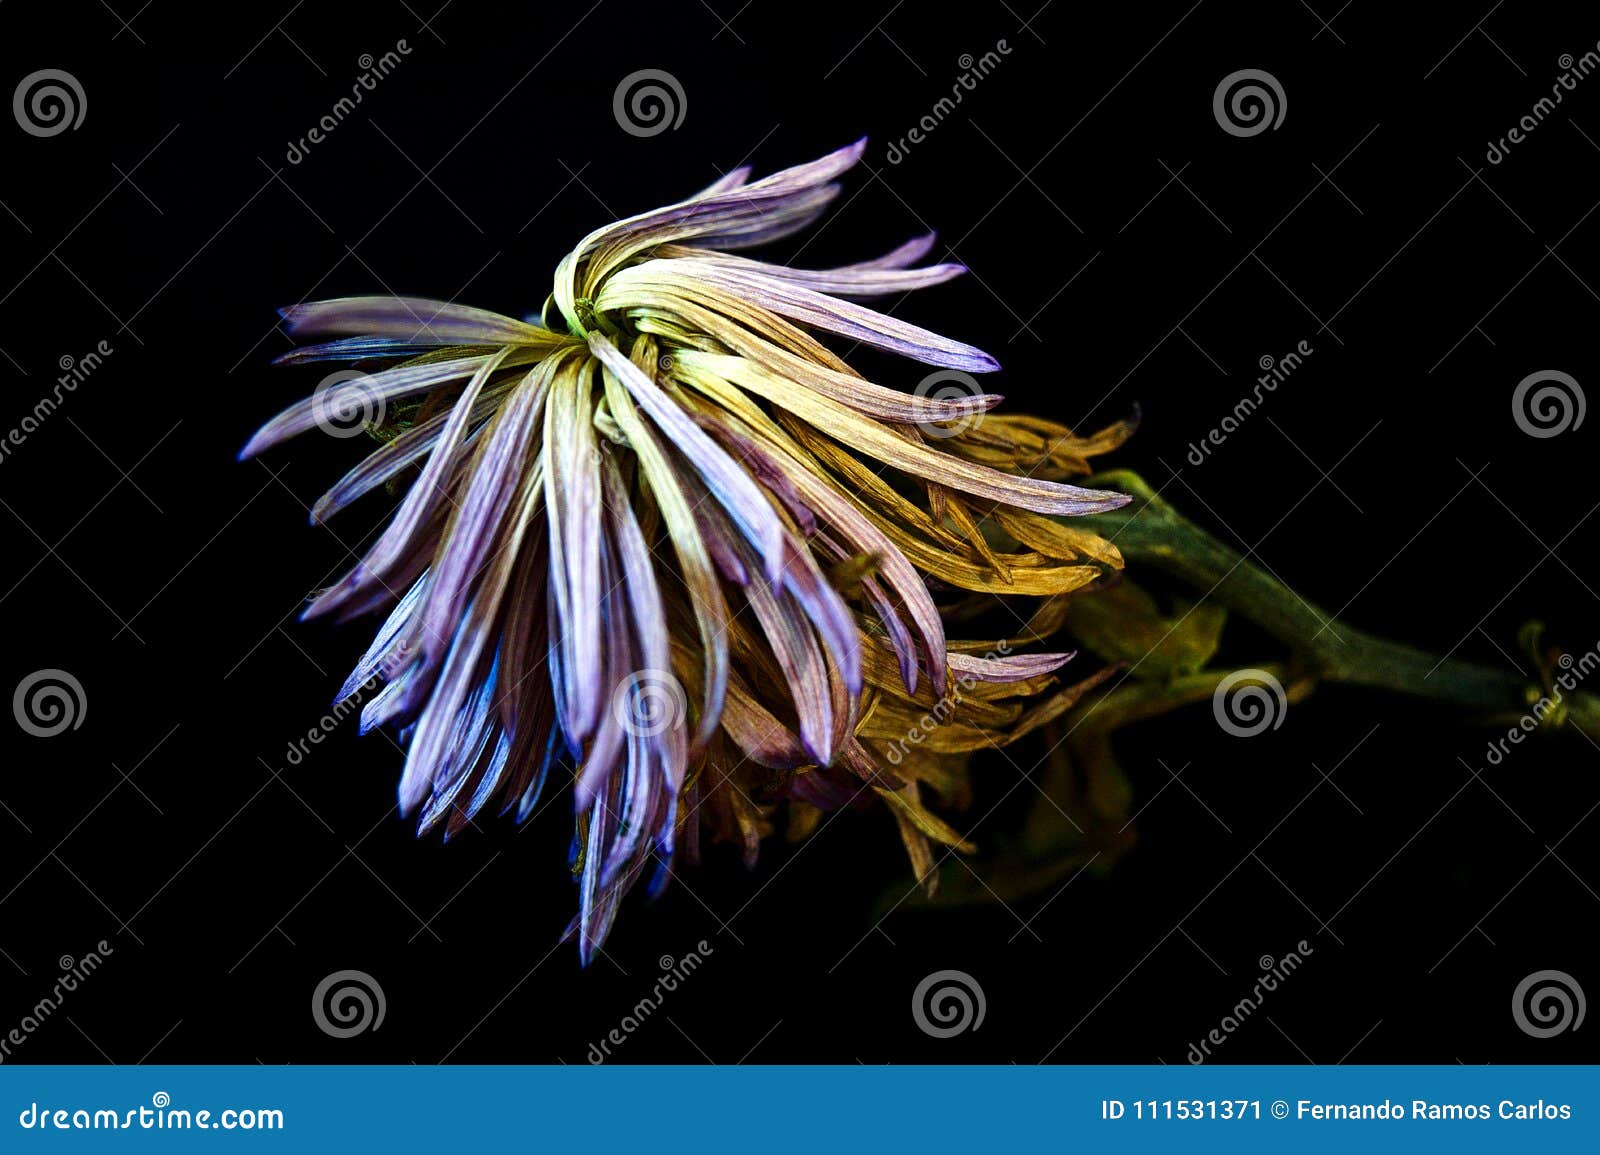 purple dried chrysanthemum